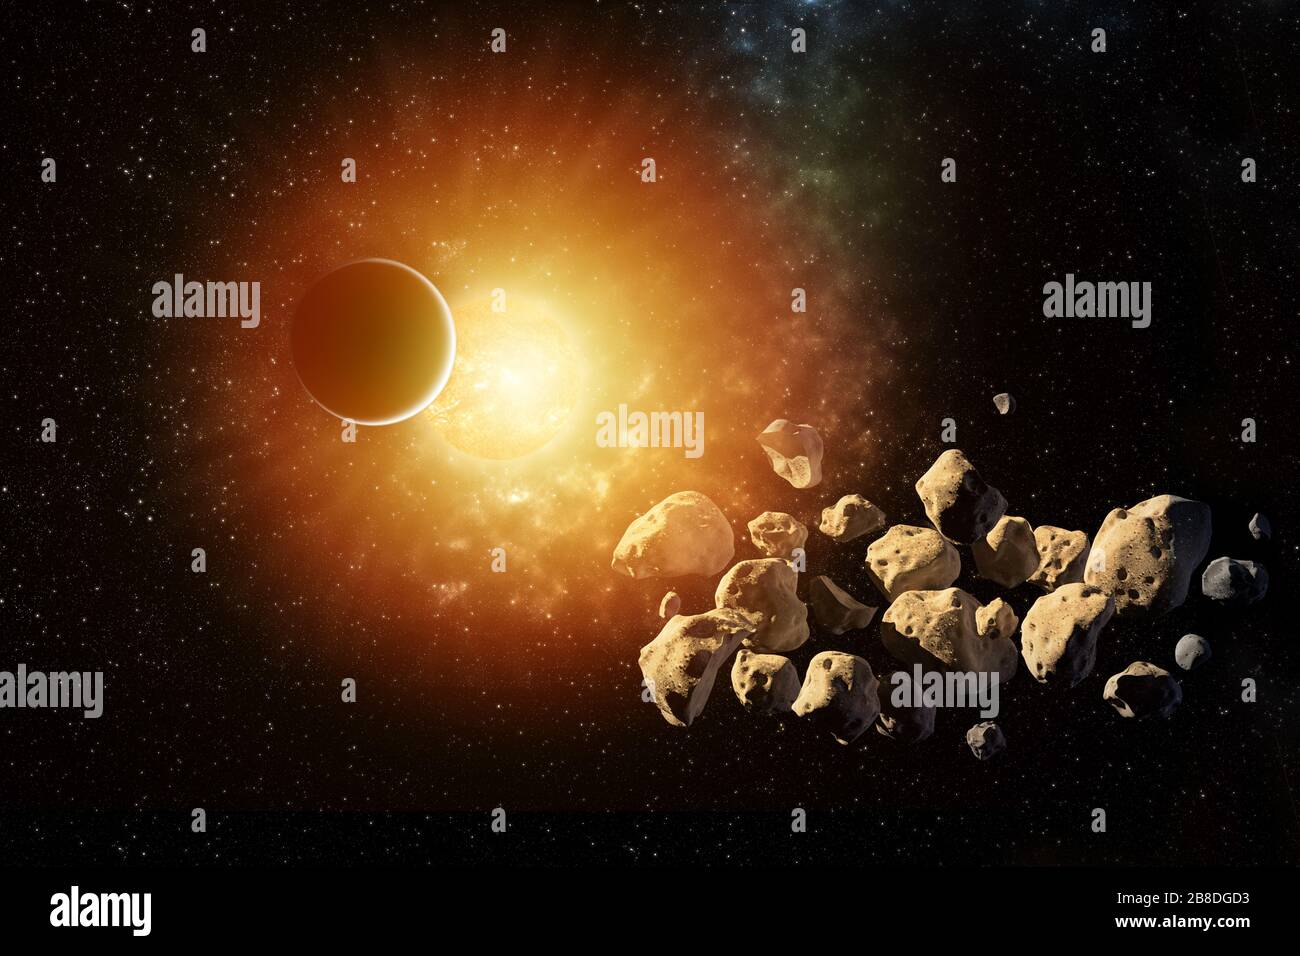 Planeten umrunden die Sonne im Sonnensystem mit Asteroiden in den farbenfrohen Sternenuniversum-Elementen dieses Bildes, das von der NASA eingerichtet wurde Stockfoto